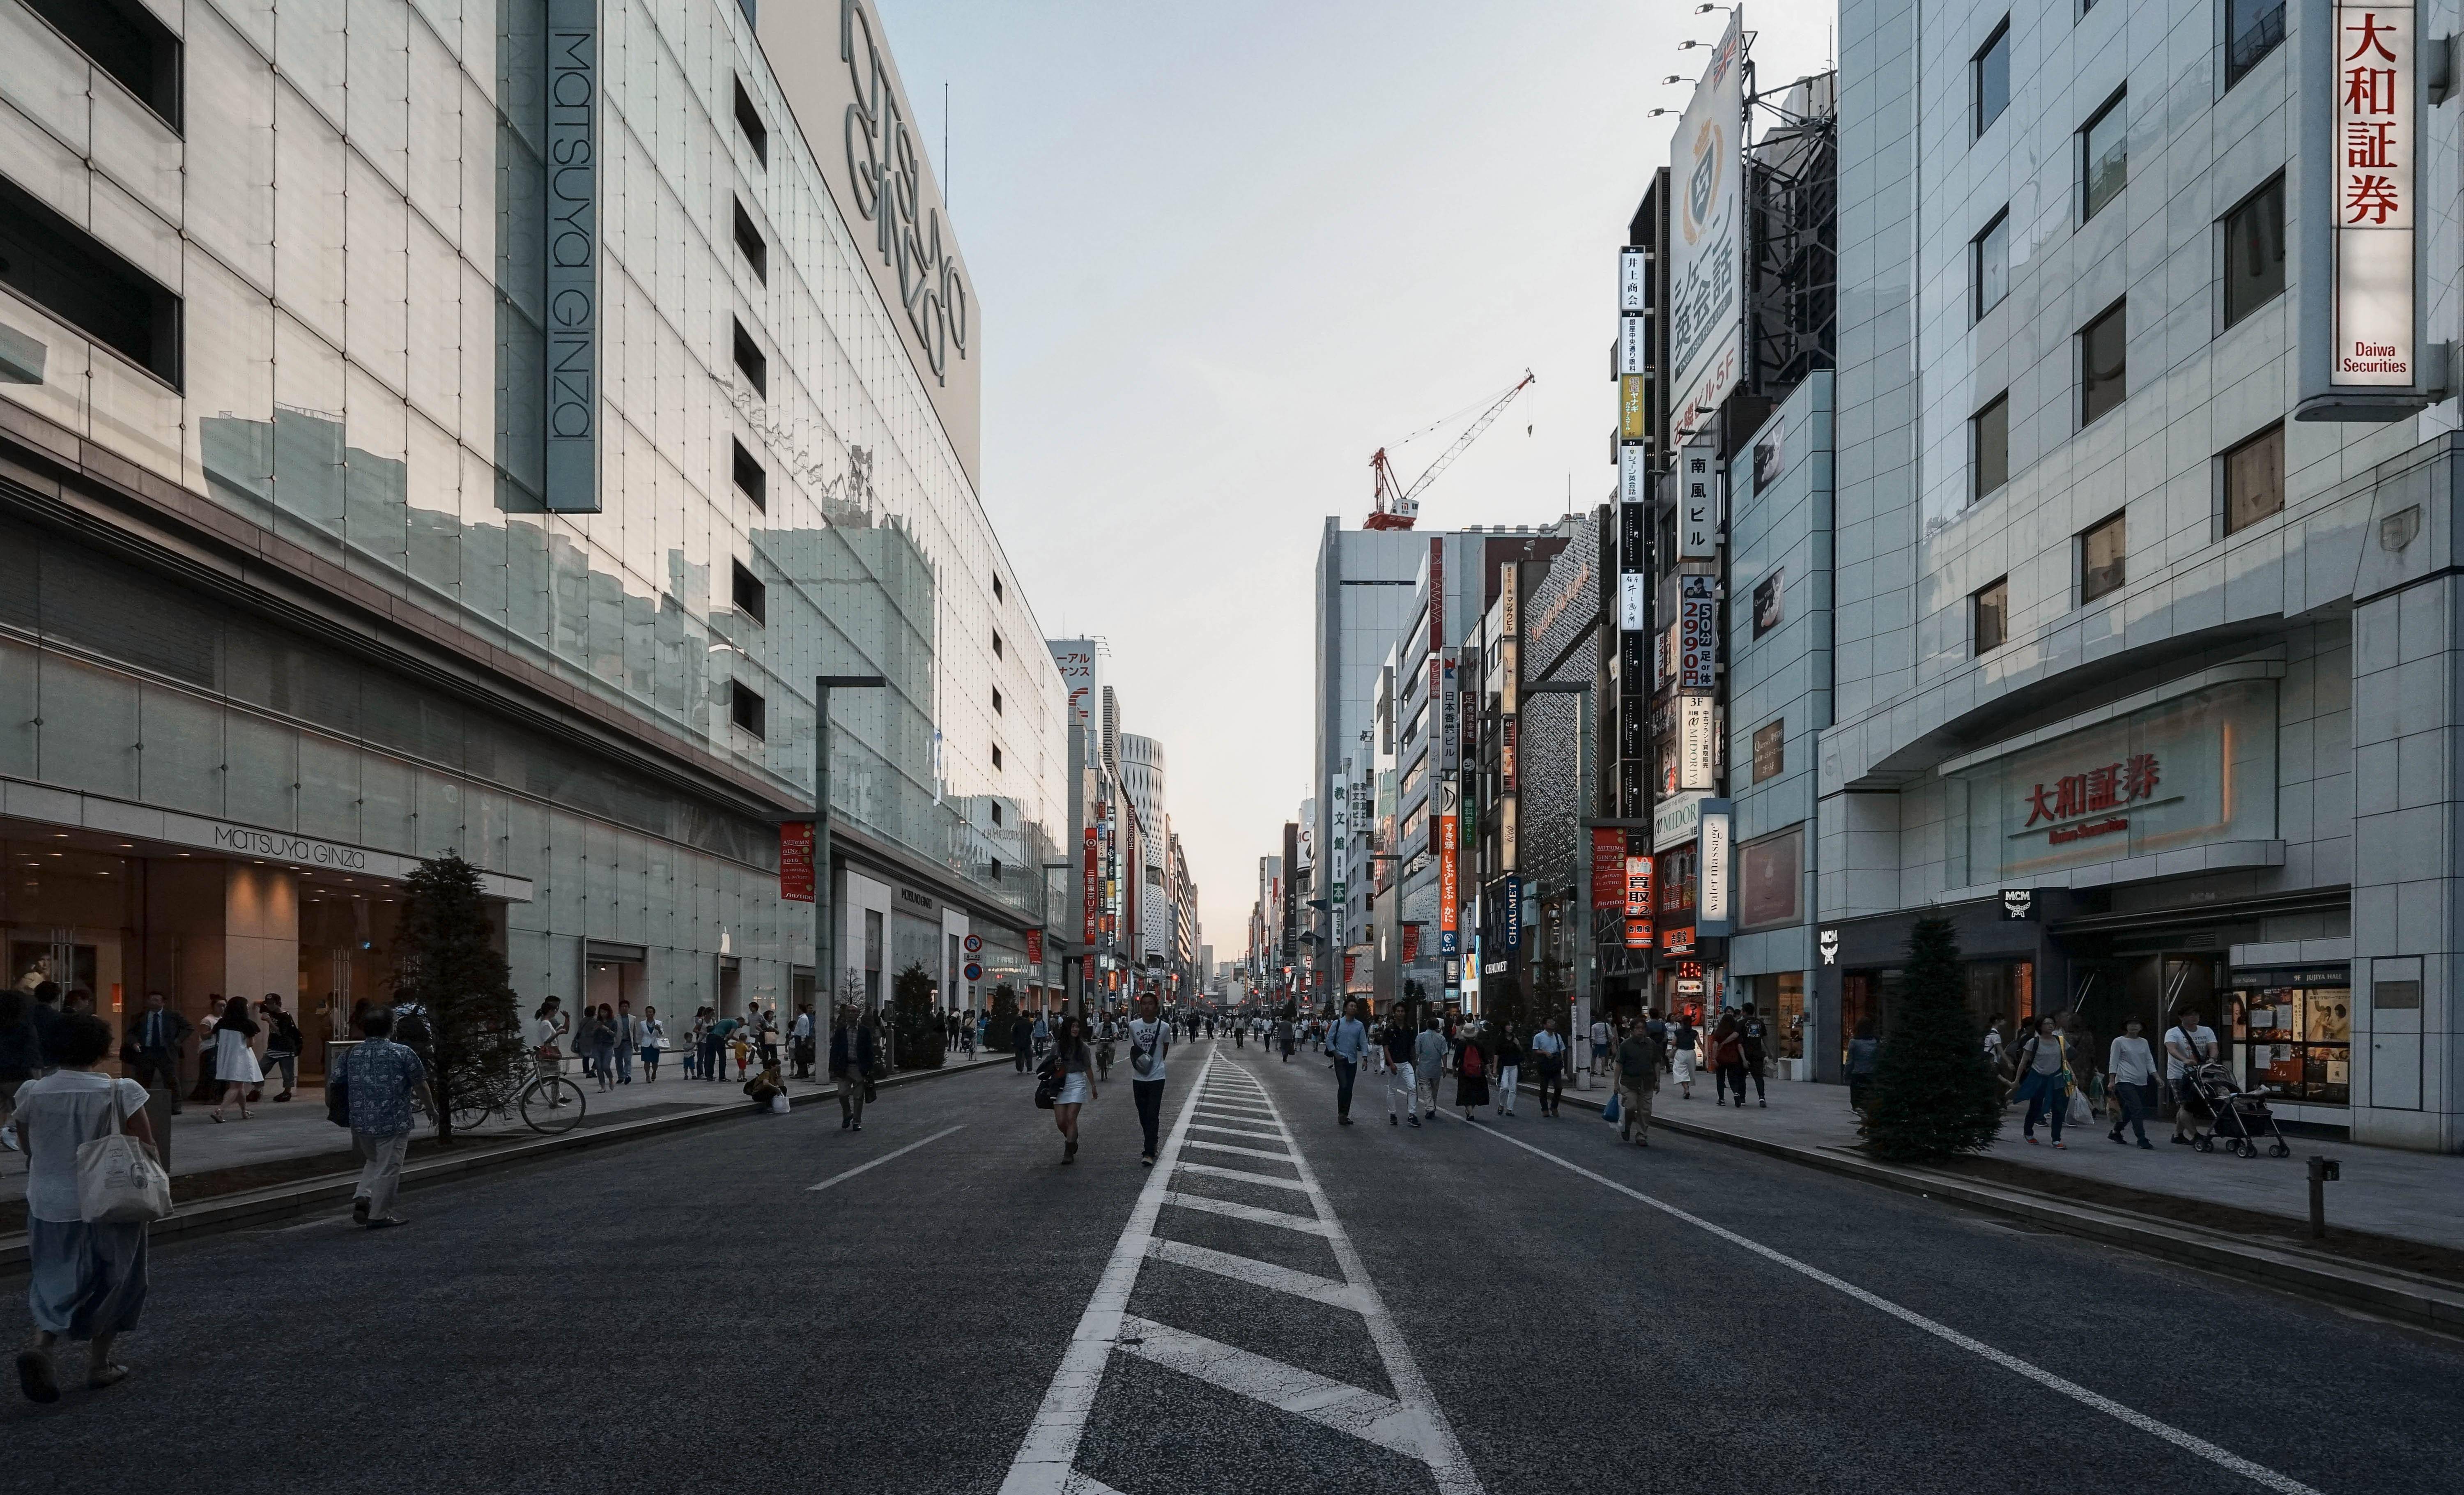 实拍日本东京银座,既热闹而又整洁,不愧是亚洲第一商业街